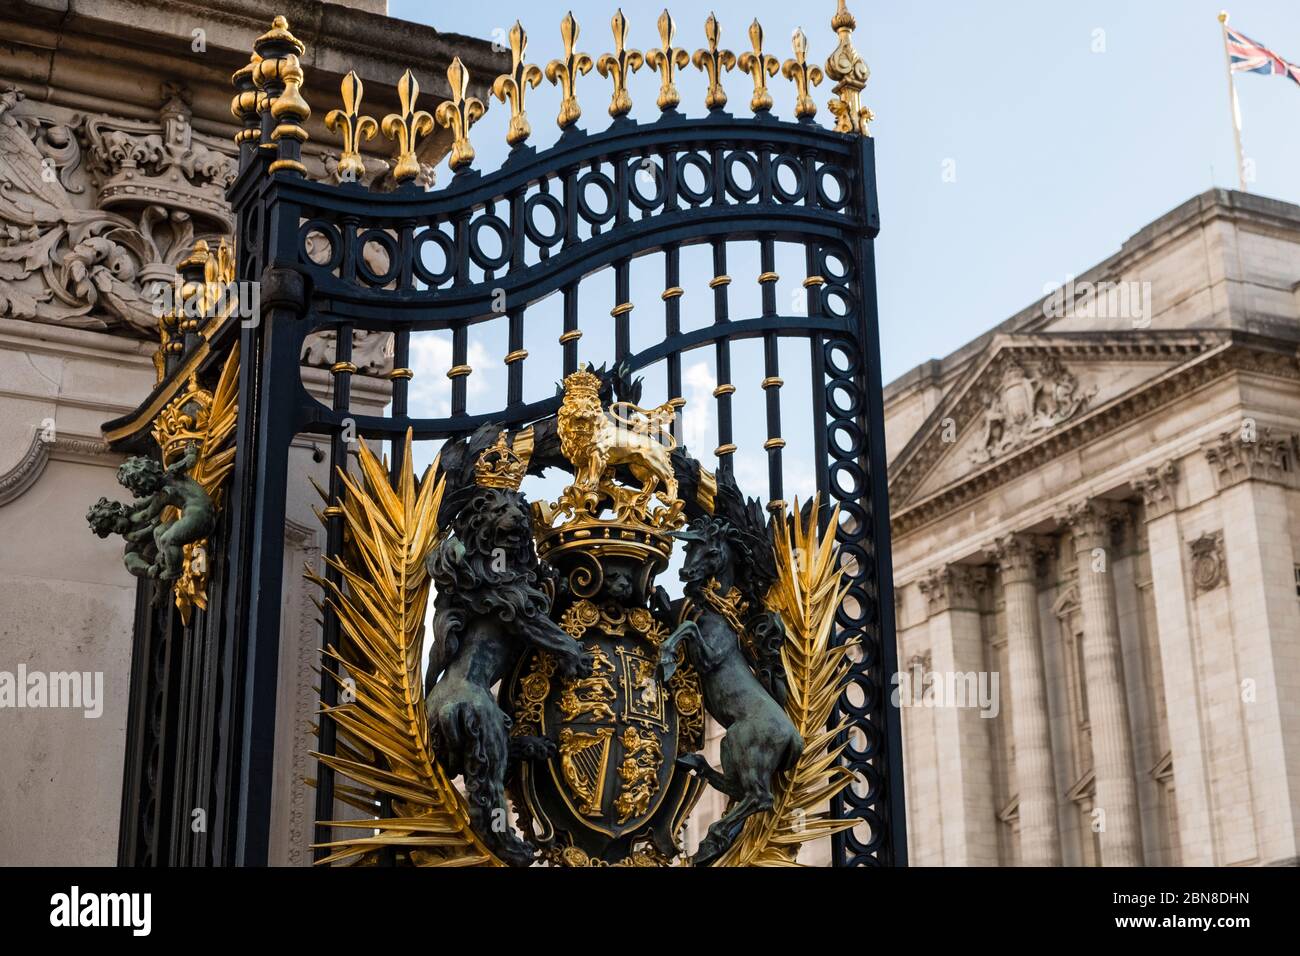 Closeup of entrance gates leading into Buckingham Palace, London, England Stock Photo